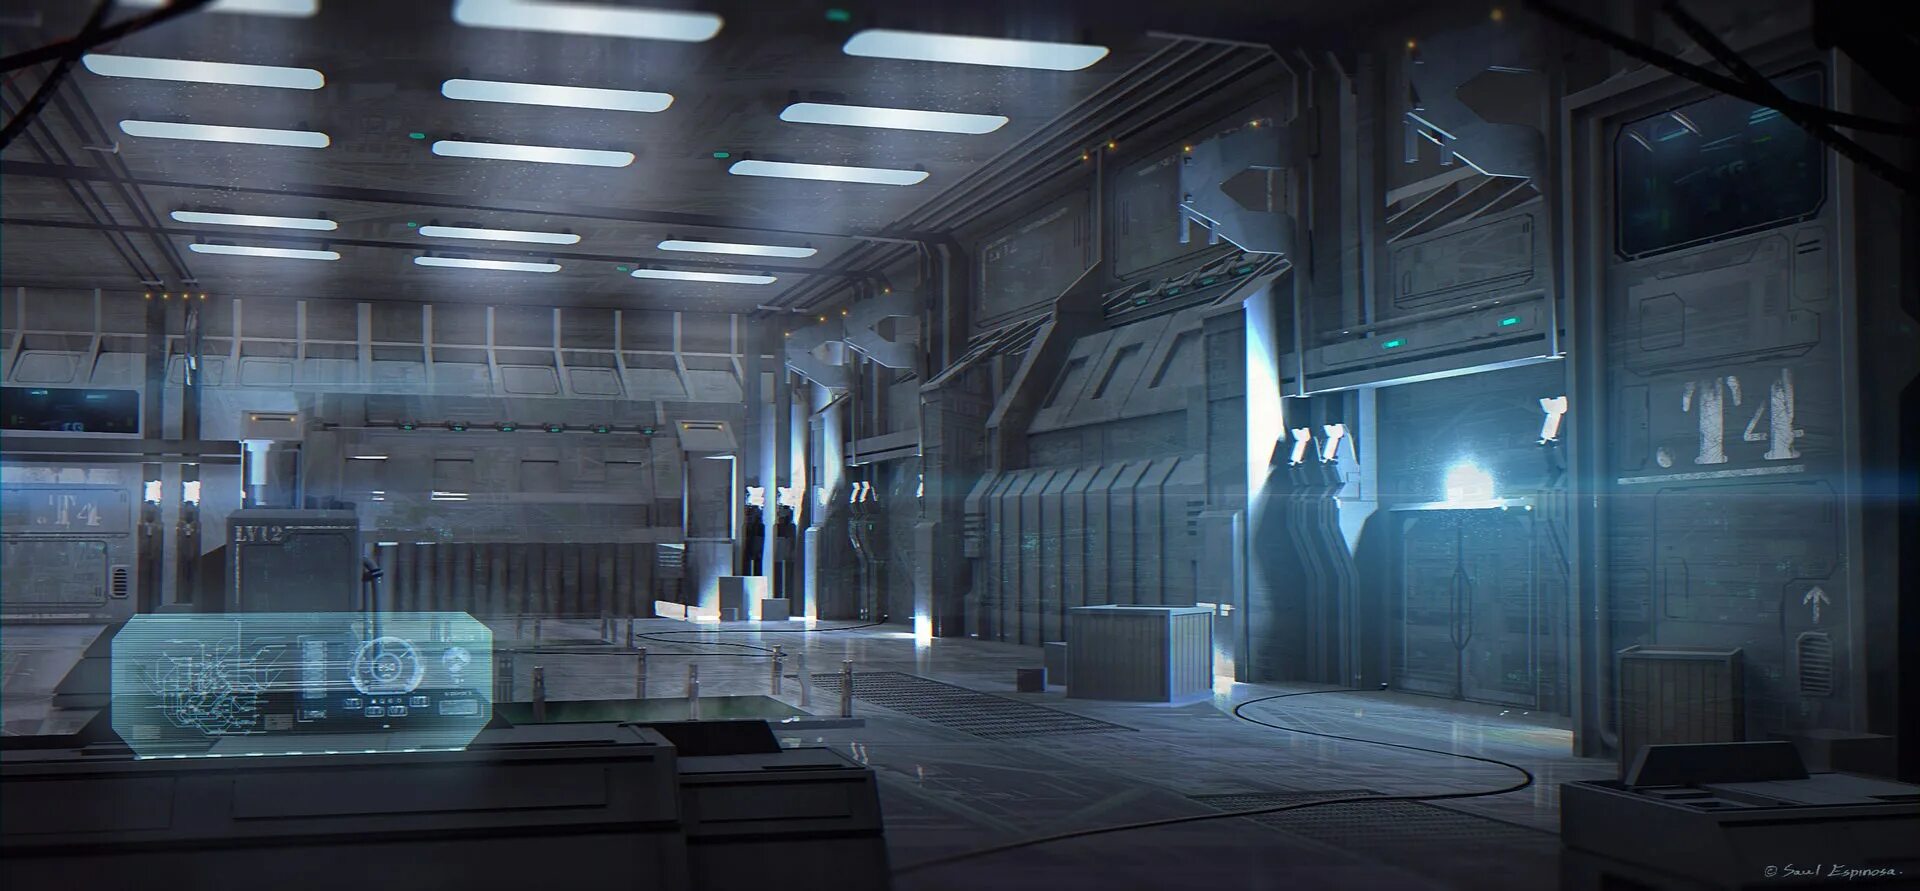 Игры будущего зал. Локации амонг АС космический корабль. Тренировочный зал Sci Fi. Космический корабль будущего внутри амонг АС. Лаборатория амонг АС.